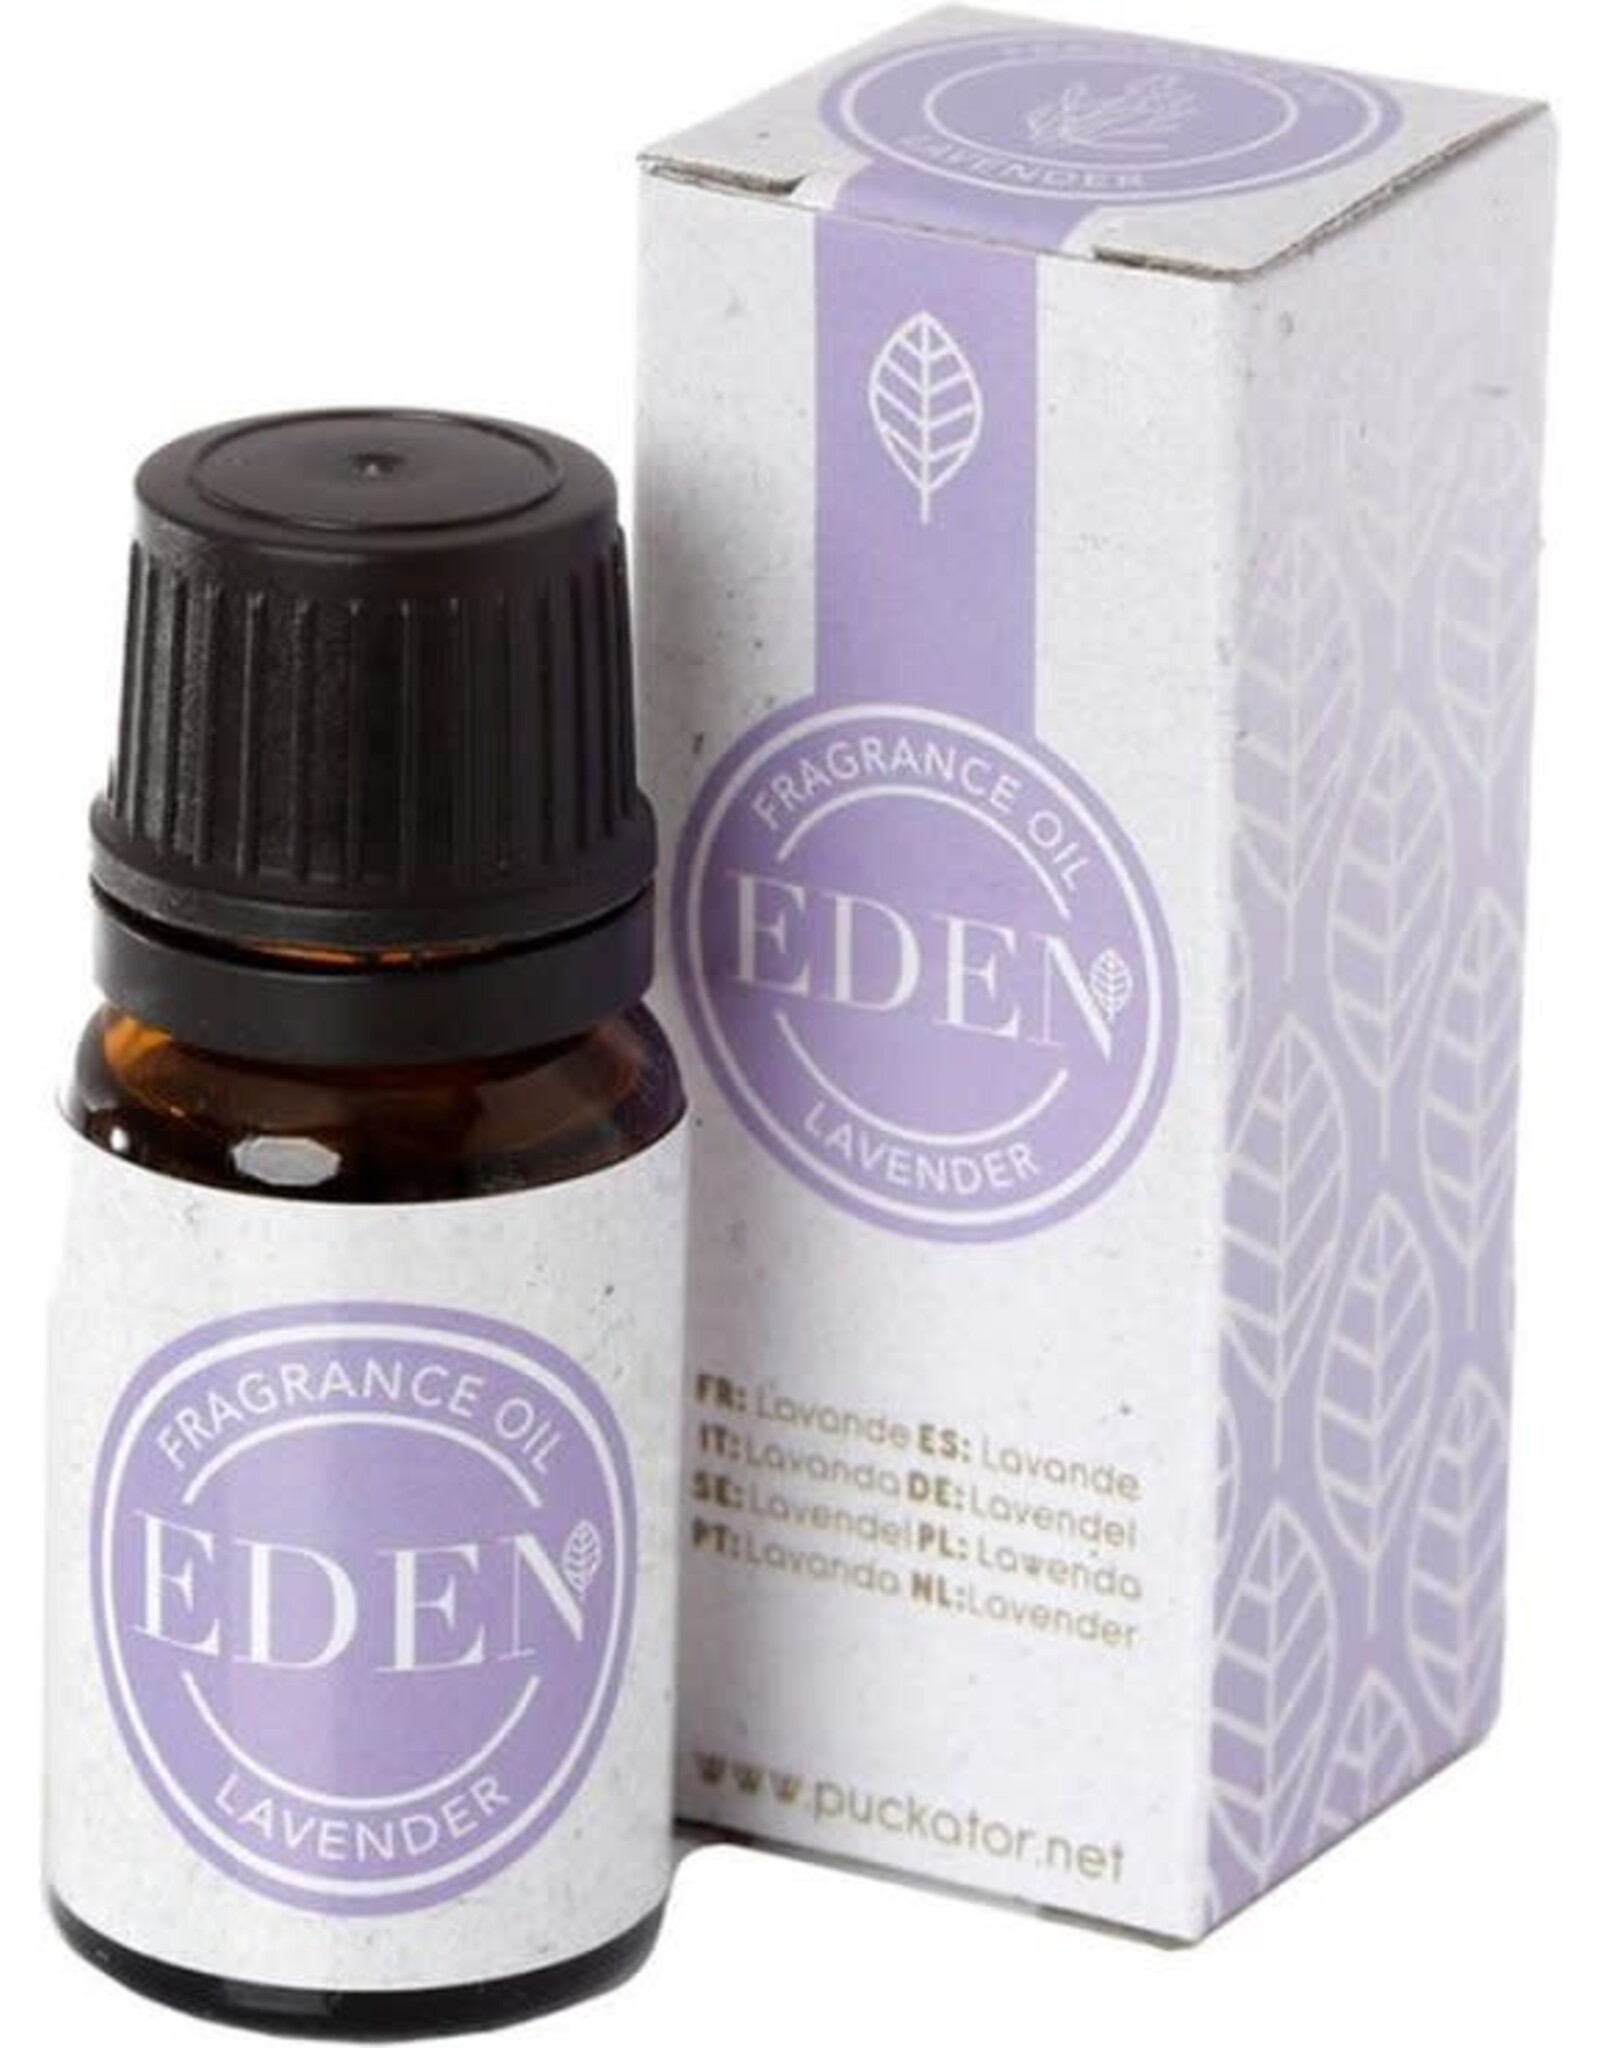 Eden Fragance oil, Lavendel, Eden, voor o.a. oliebranders